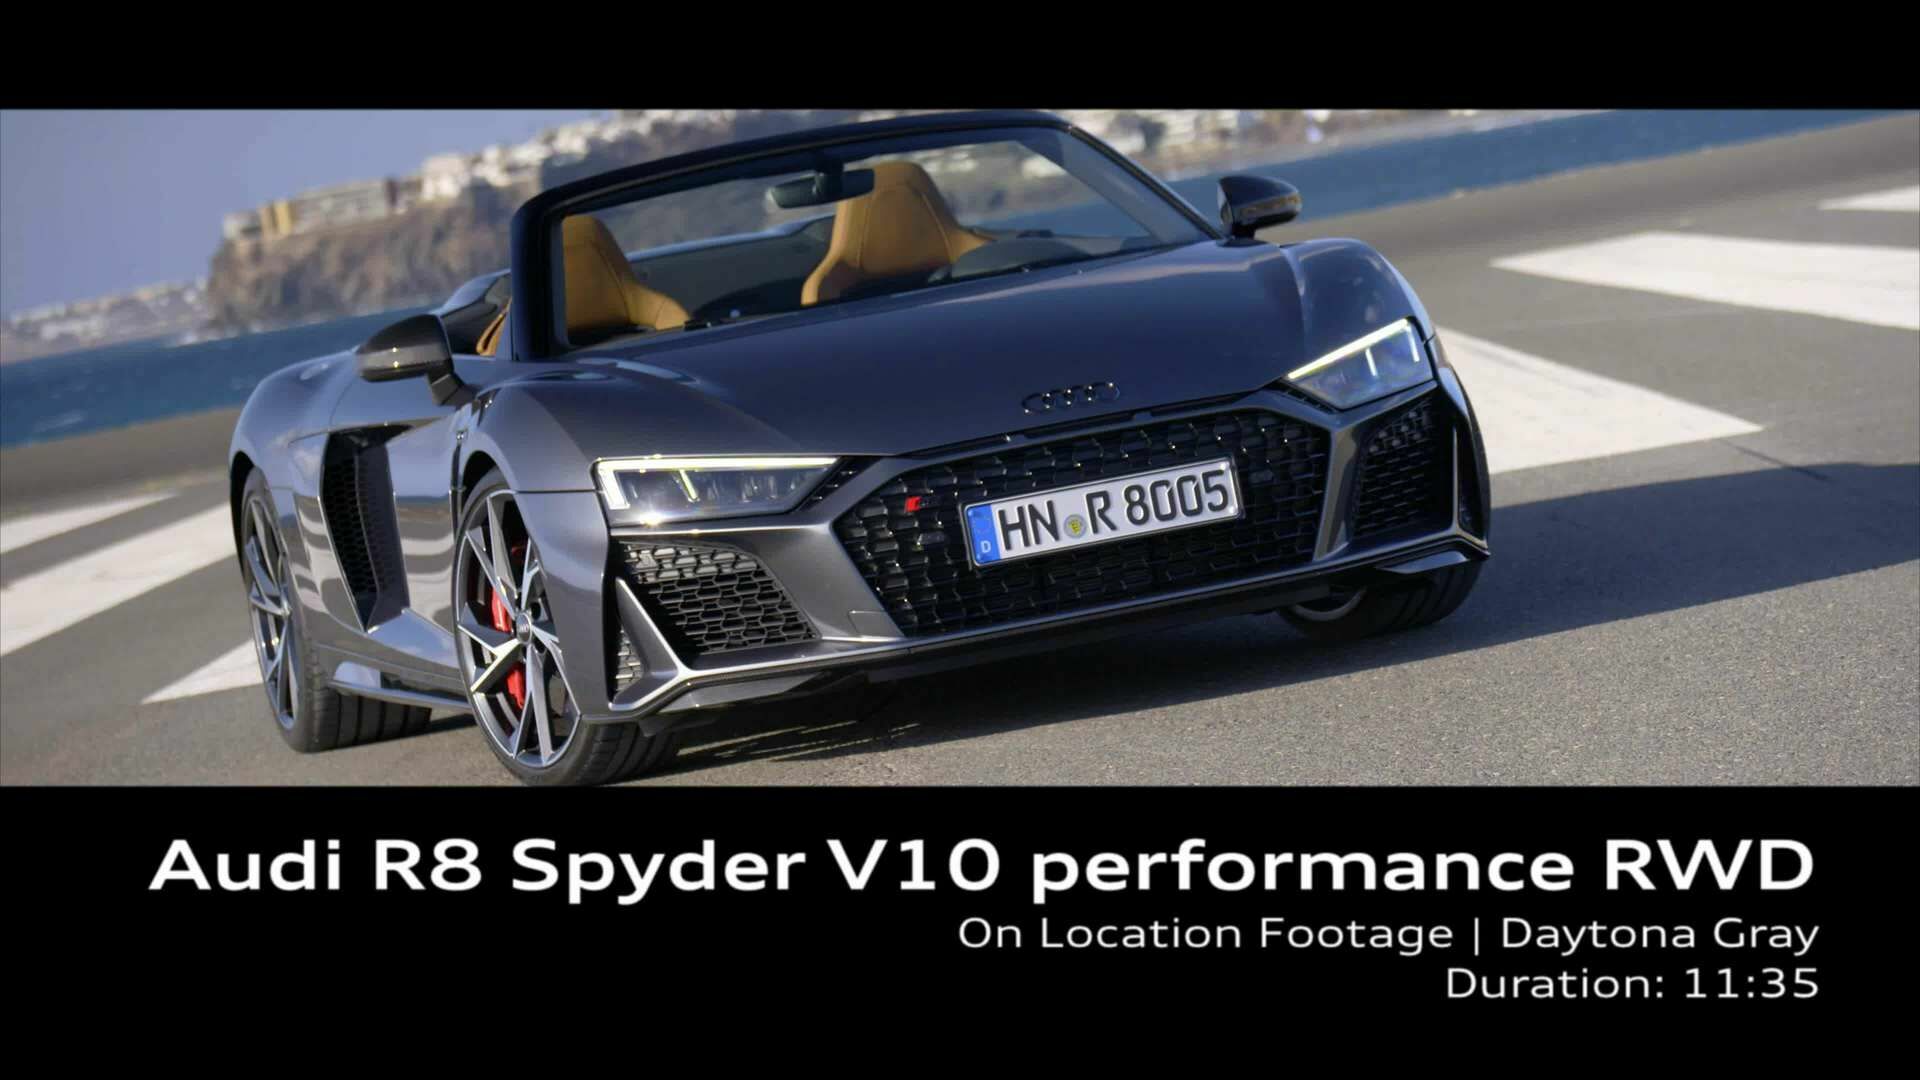 Footage: Audi R8 Spyder V10 performance RWD in Daytonagrau